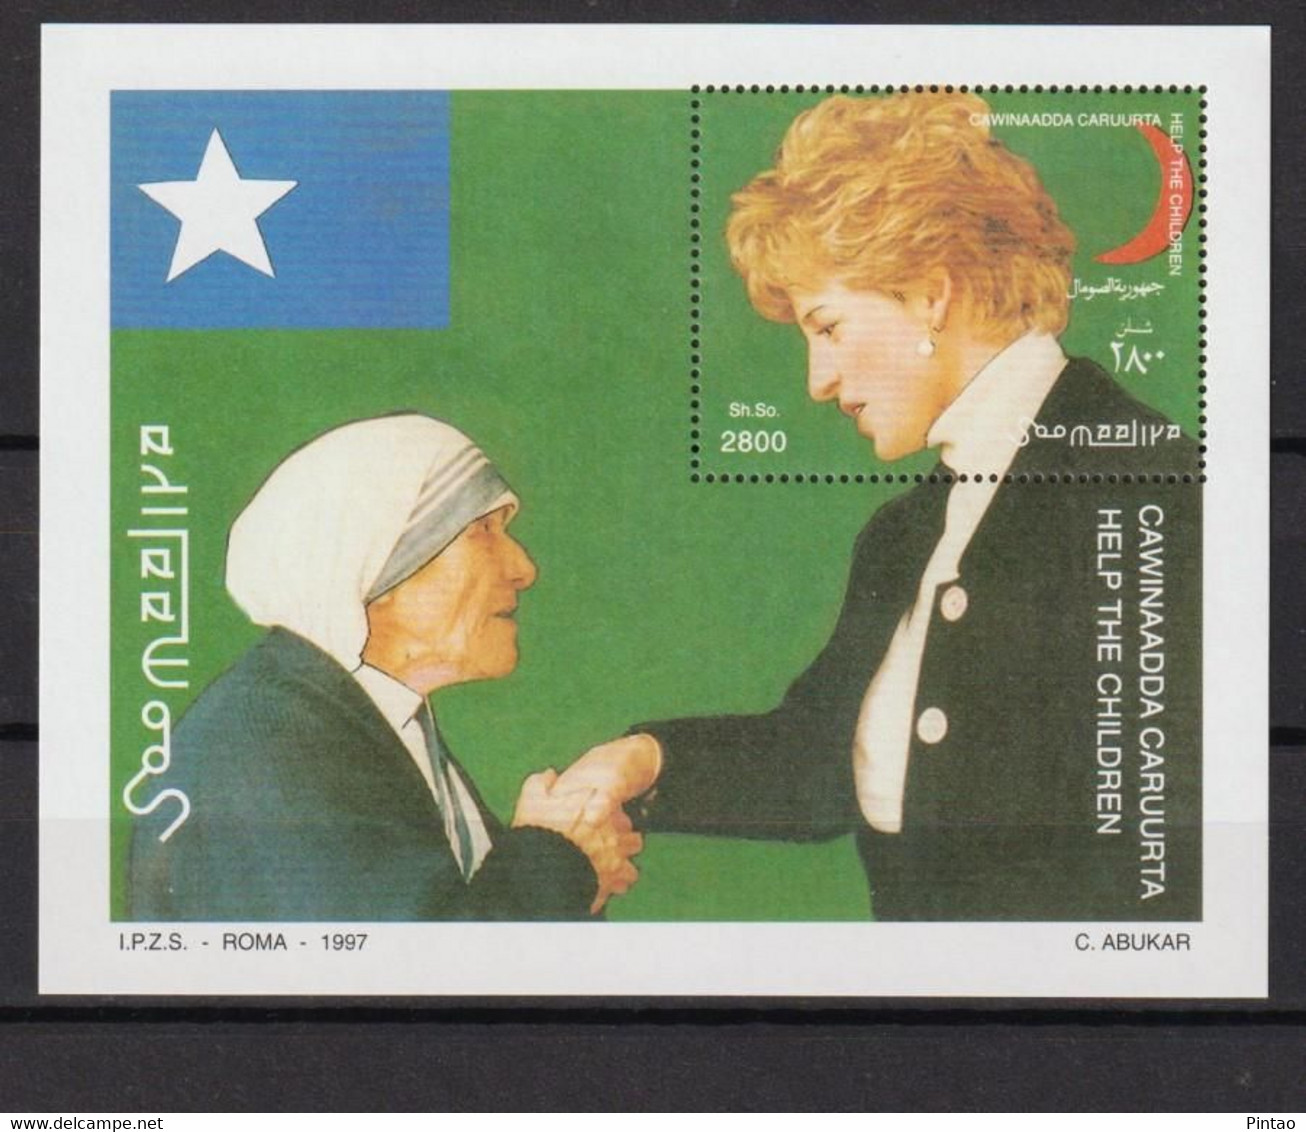 WW7396- SOMÁLIA 1997- MNH (M.Teresa Calcutá - Lady D) - Madre Teresa